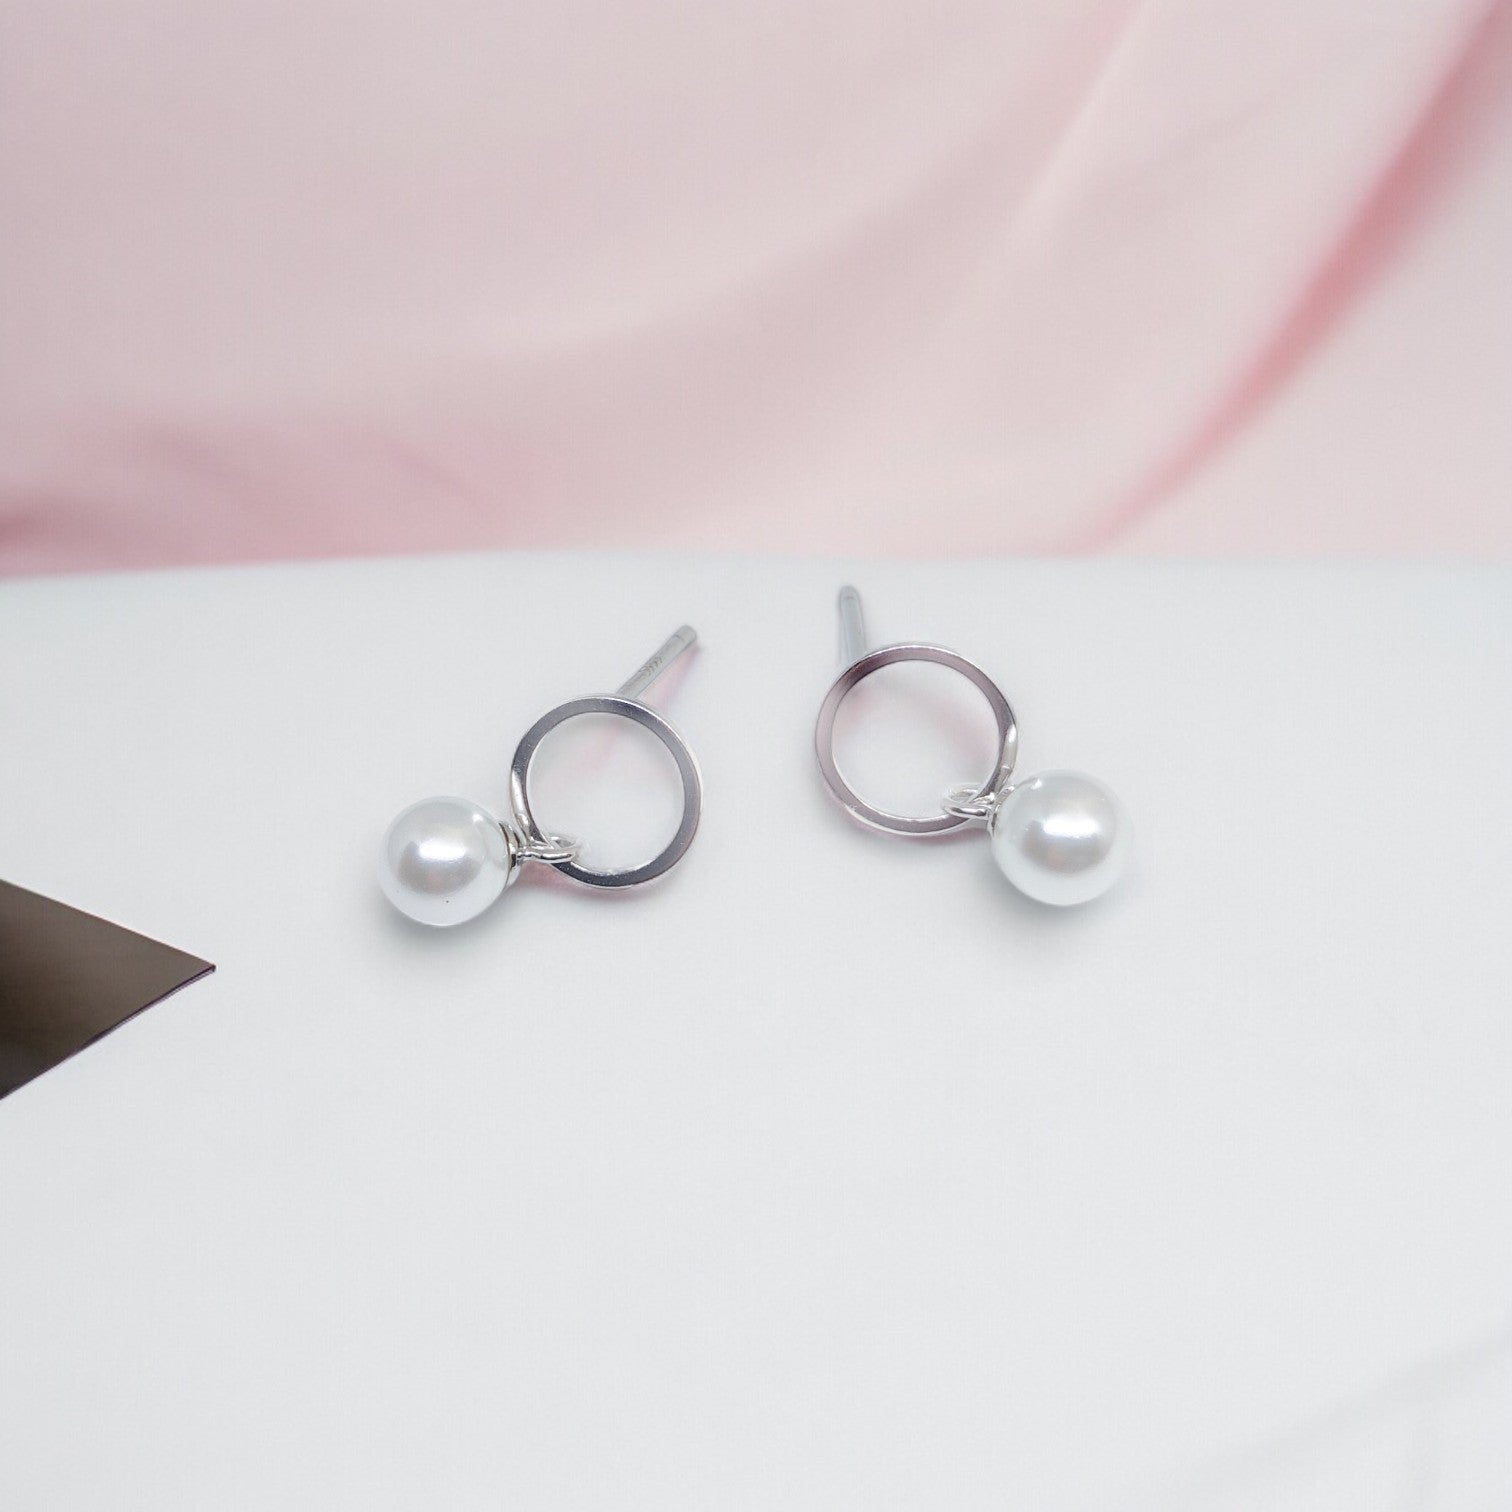 OEM Pearls Sterling Silver Earrings for Girls/Women